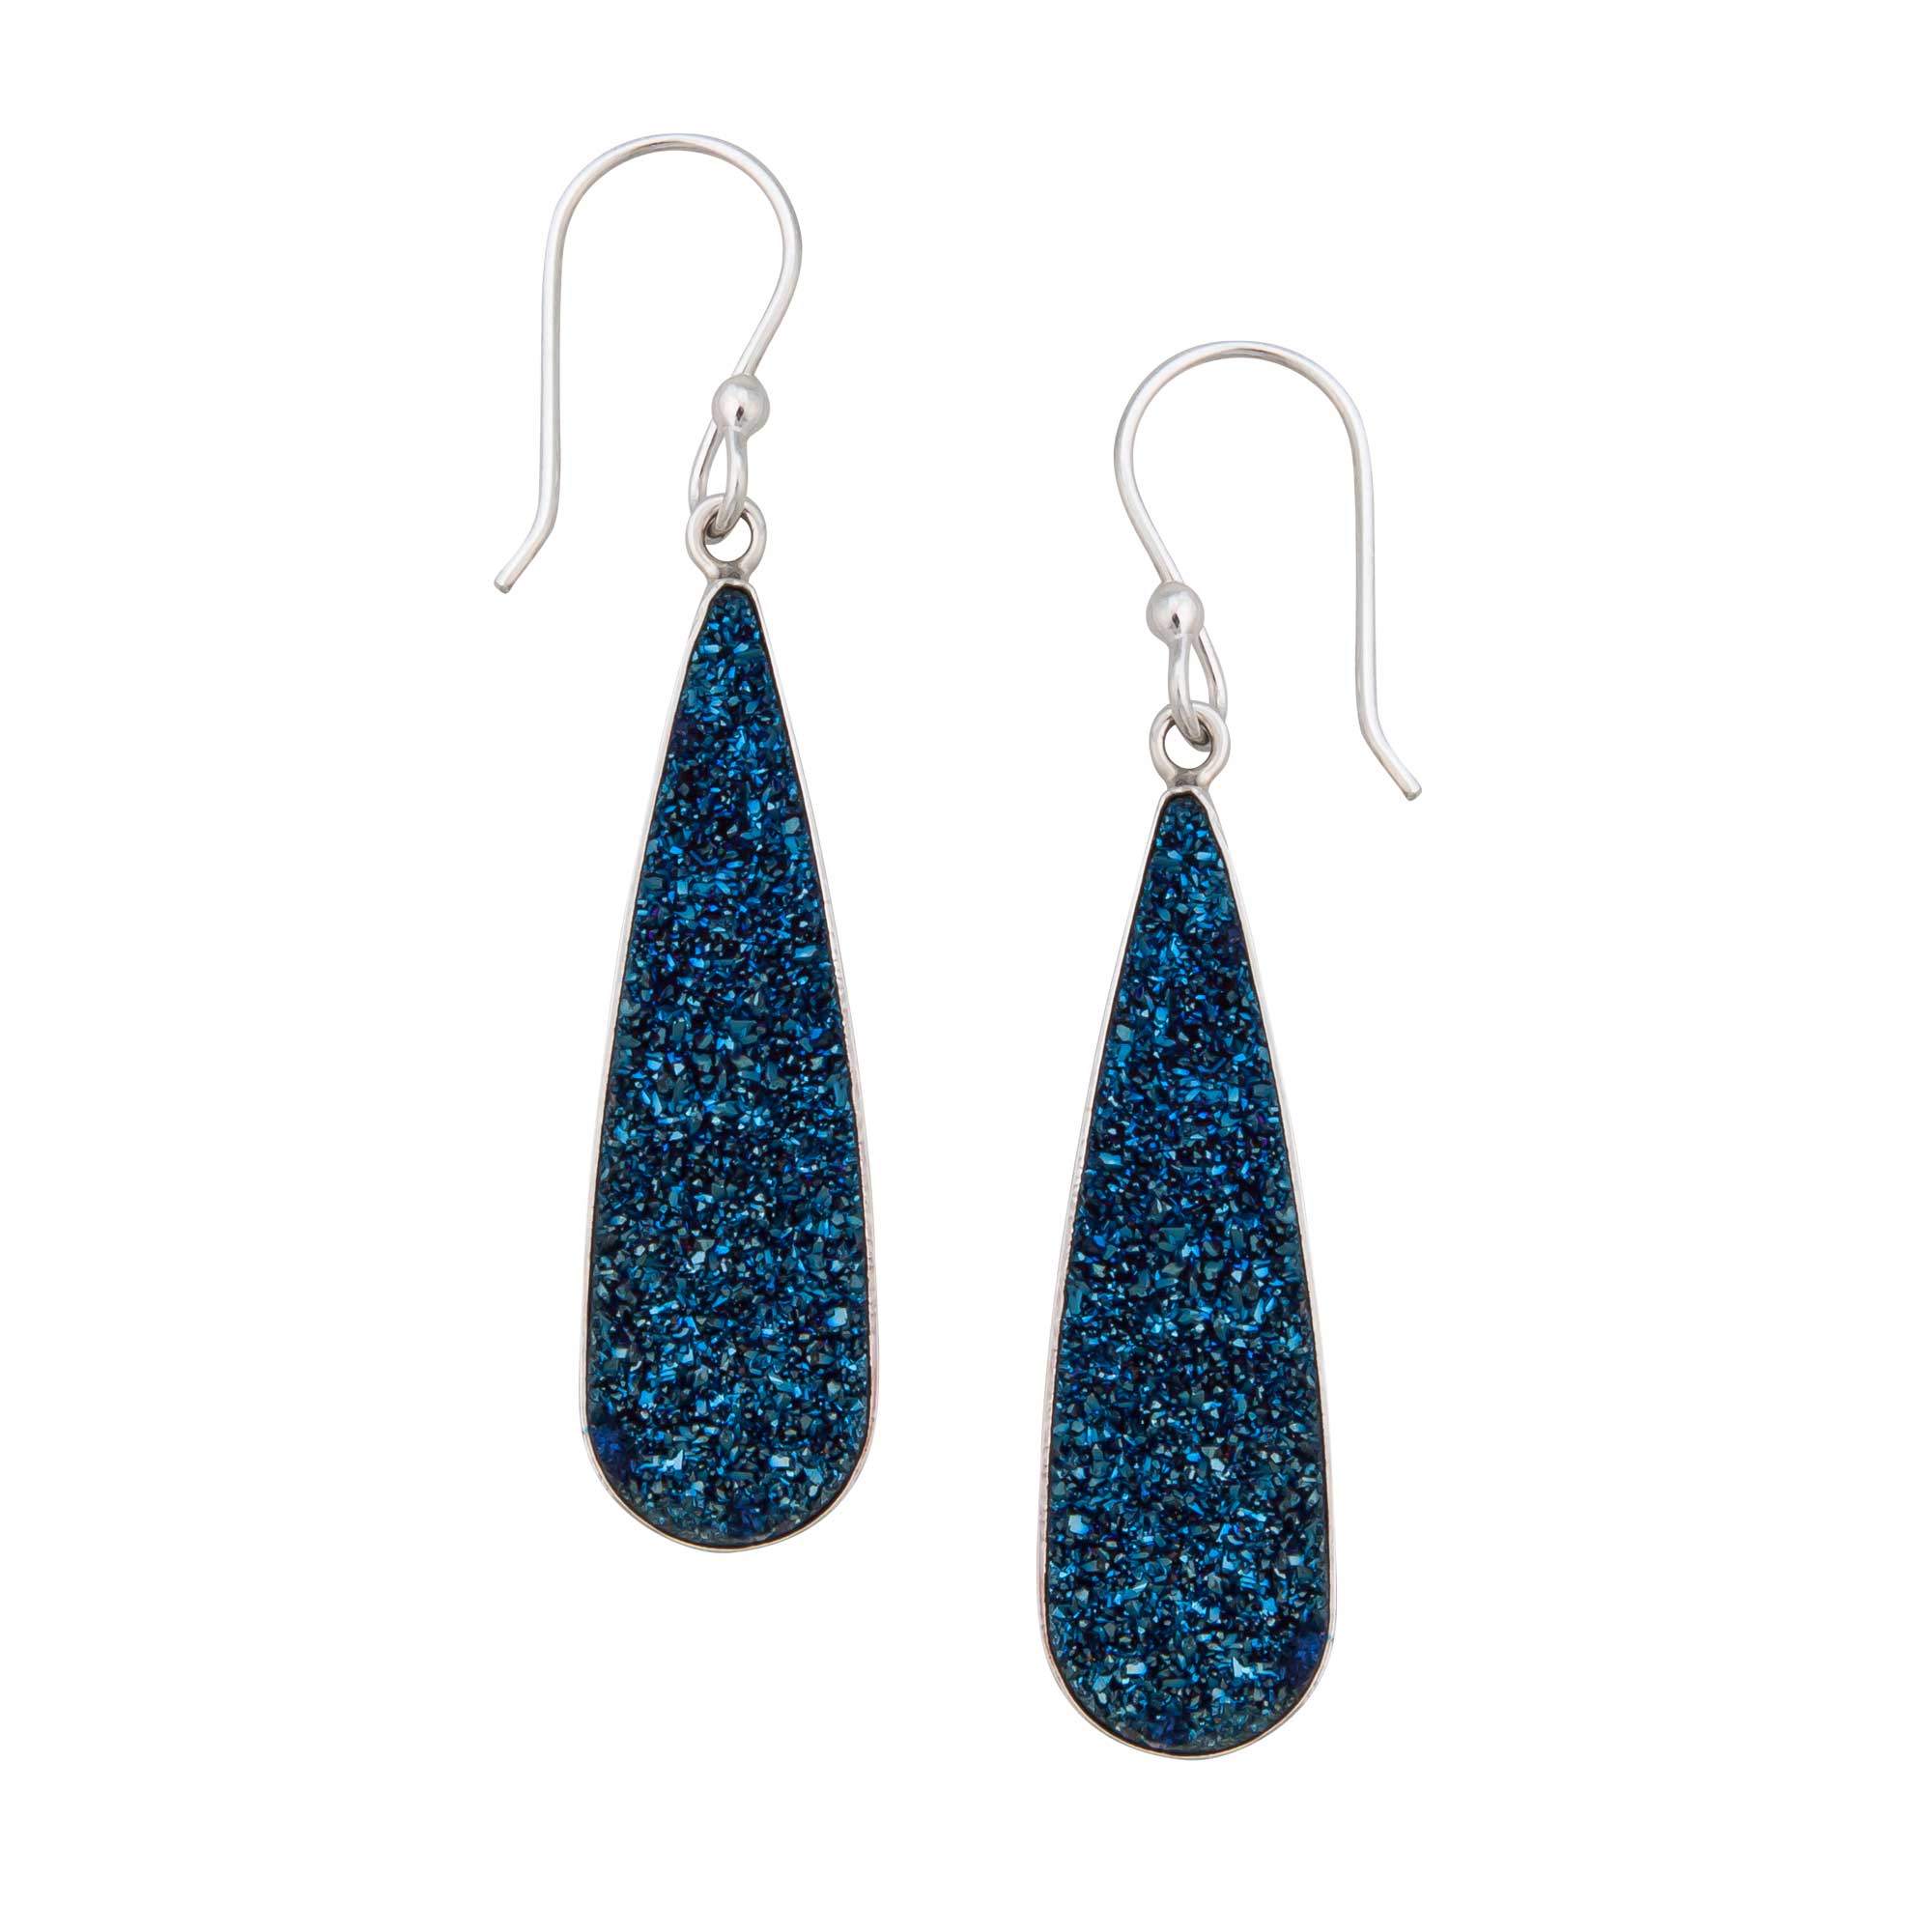 Sterling Silver Teardrop Cobalt Blue Druse Dangle Earrings | Charles Albert Jewelry